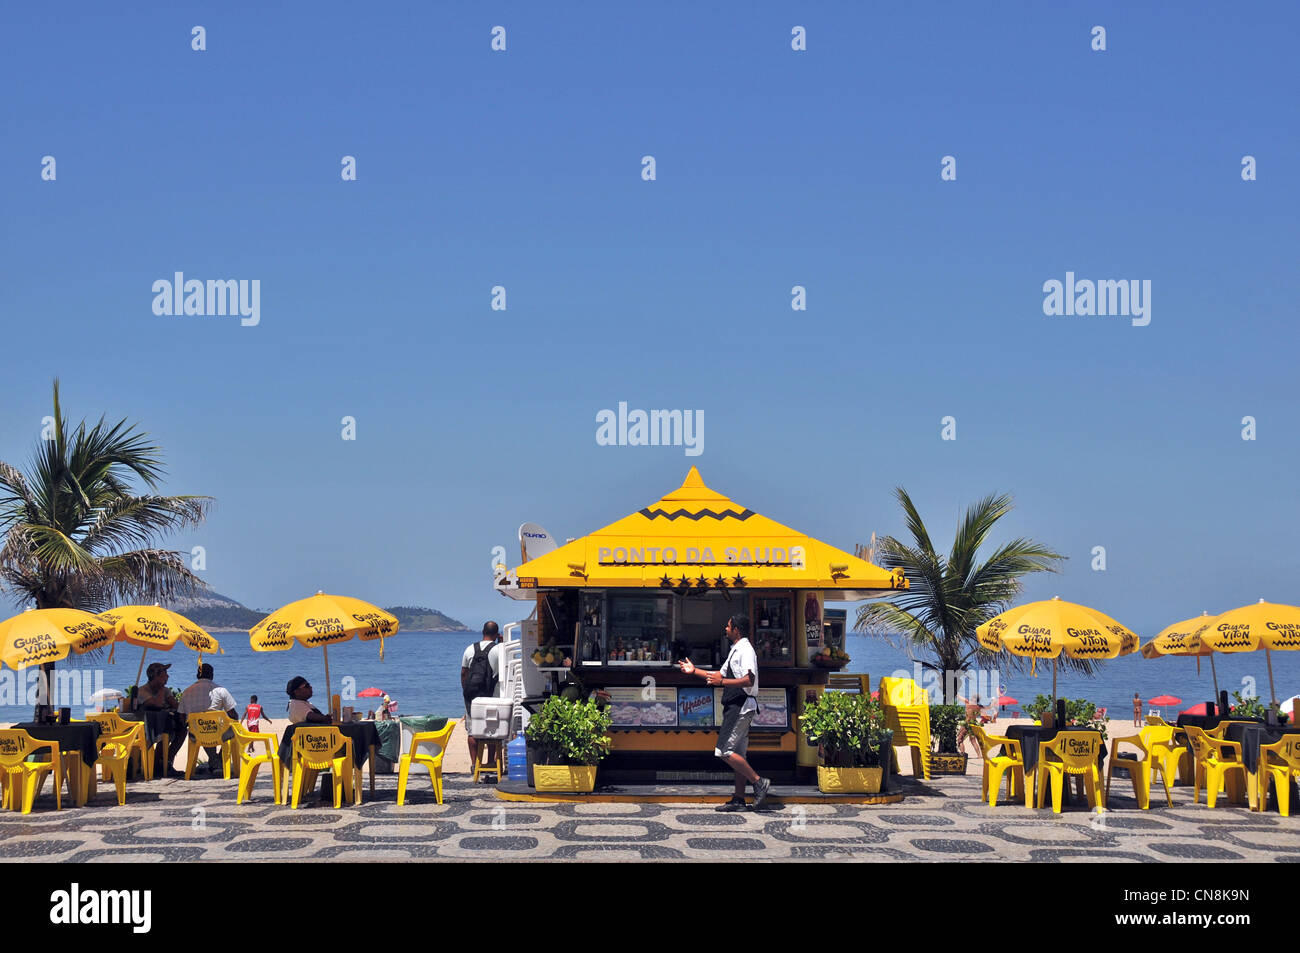 Bar plage Ipanema Rio de Janeiro Brésil Amérique du Sud Banque D'Images